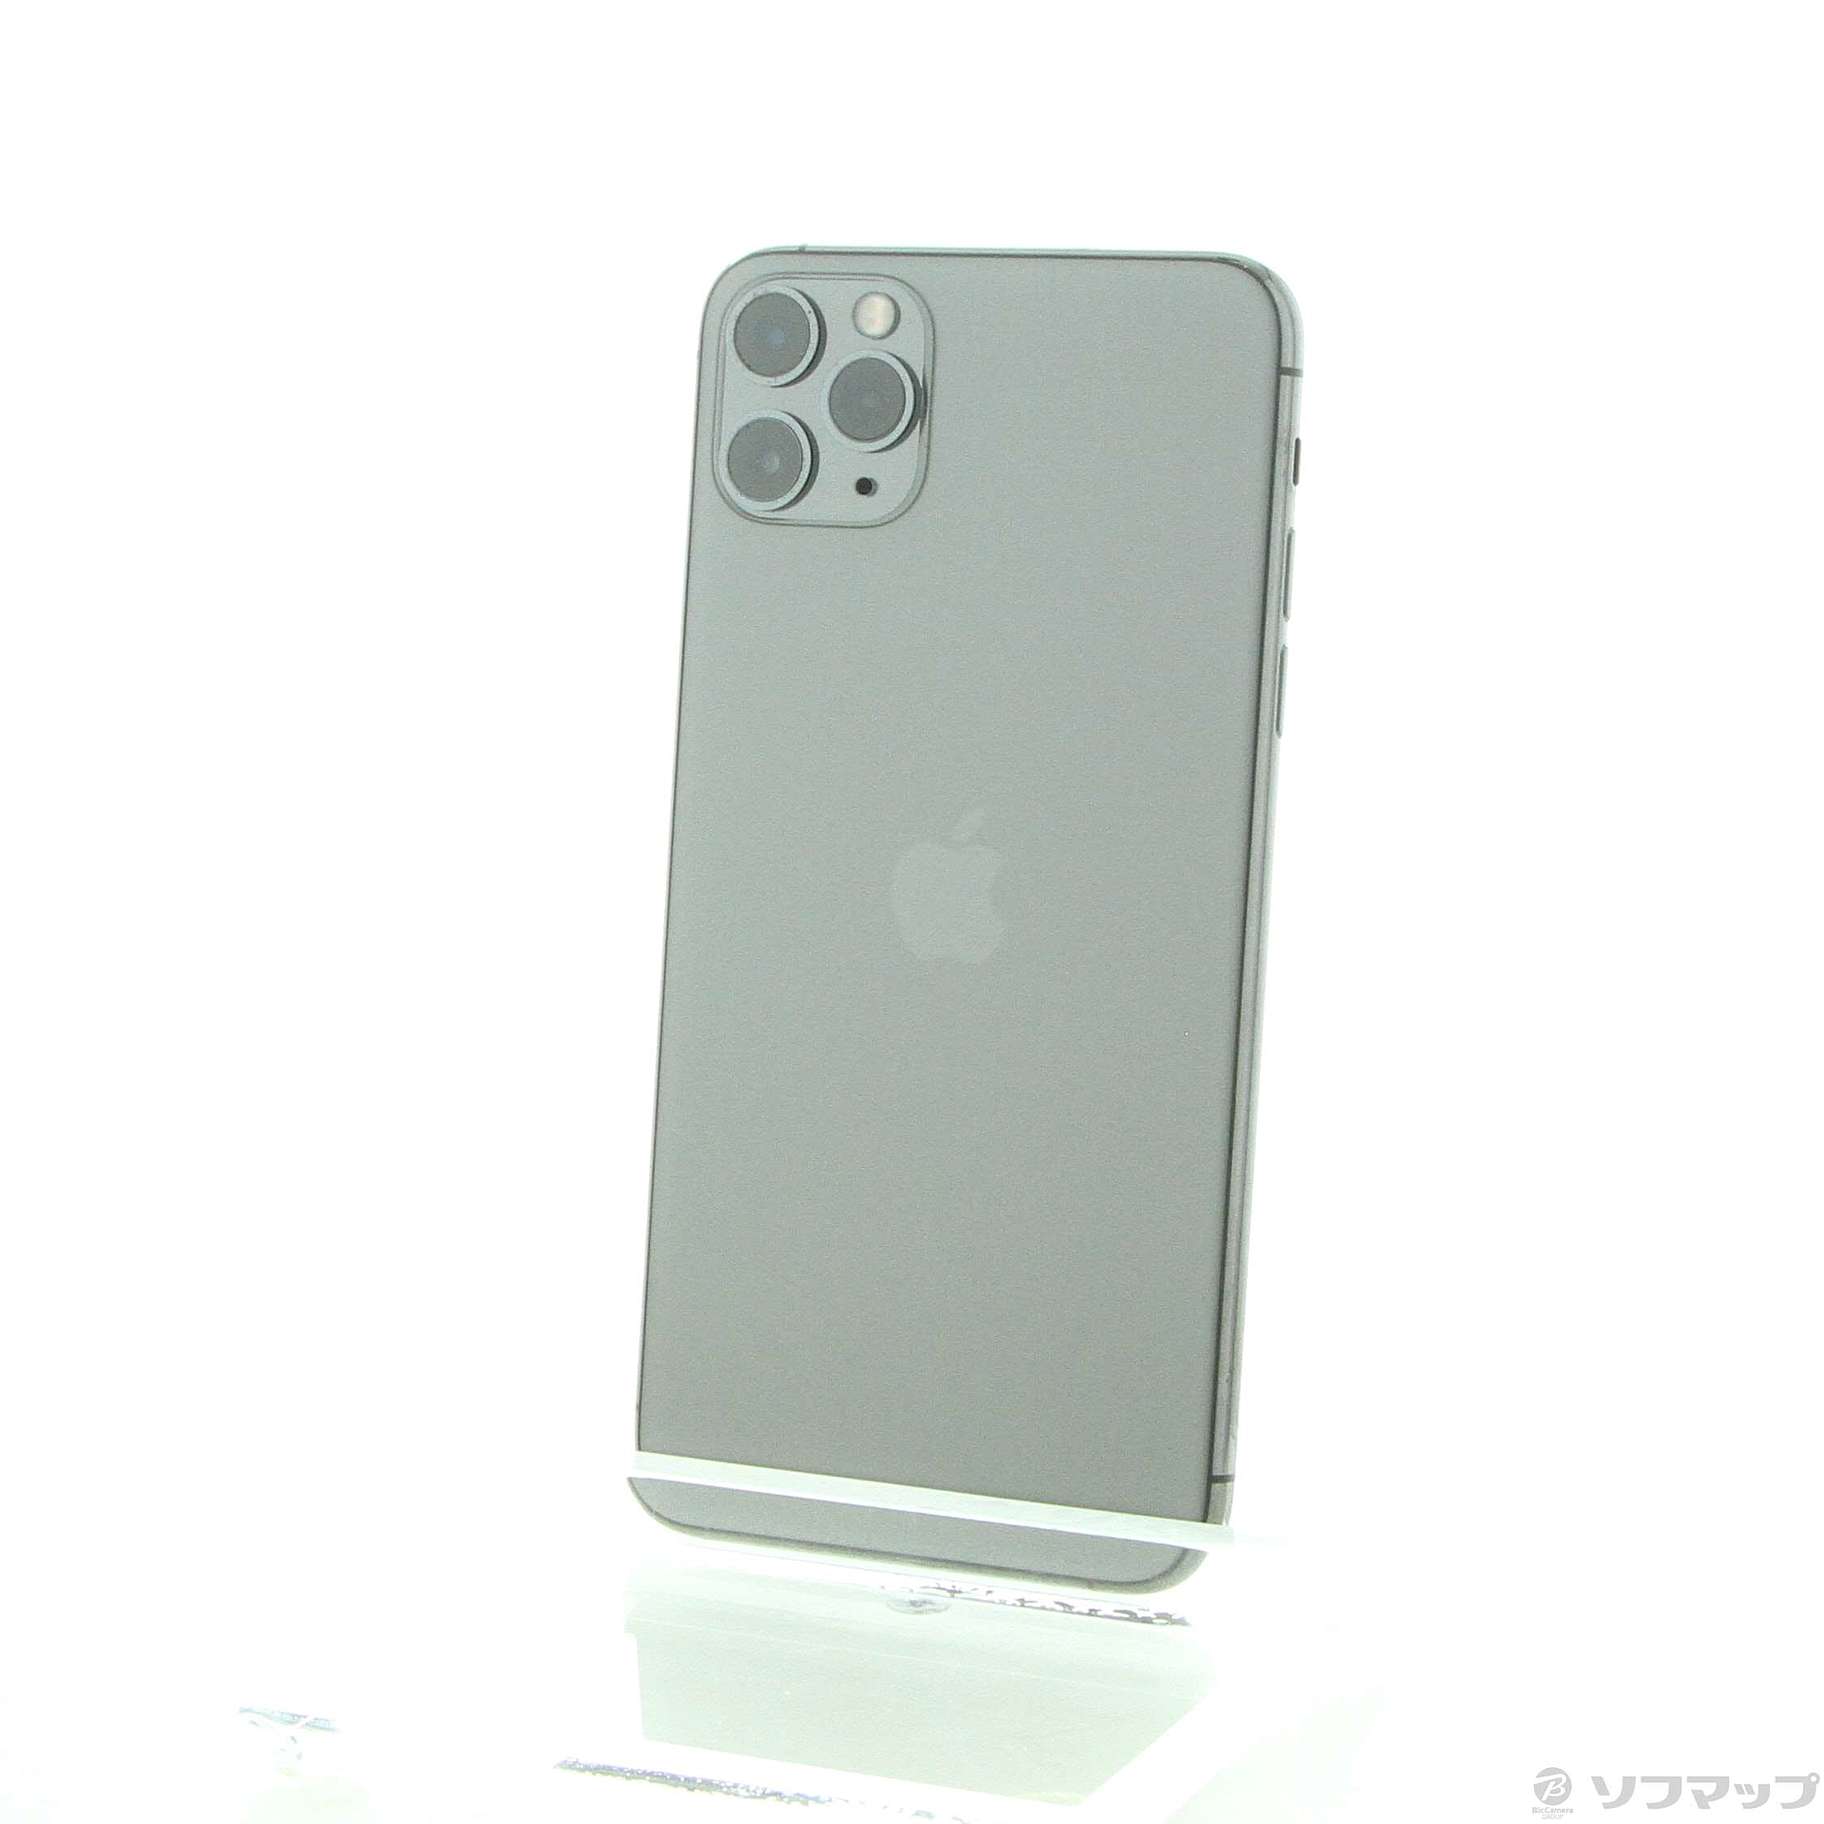 セール対象品 iPhone11 Pro Max 256GB スペースグレイ MWHJ2J／A SIMフリー